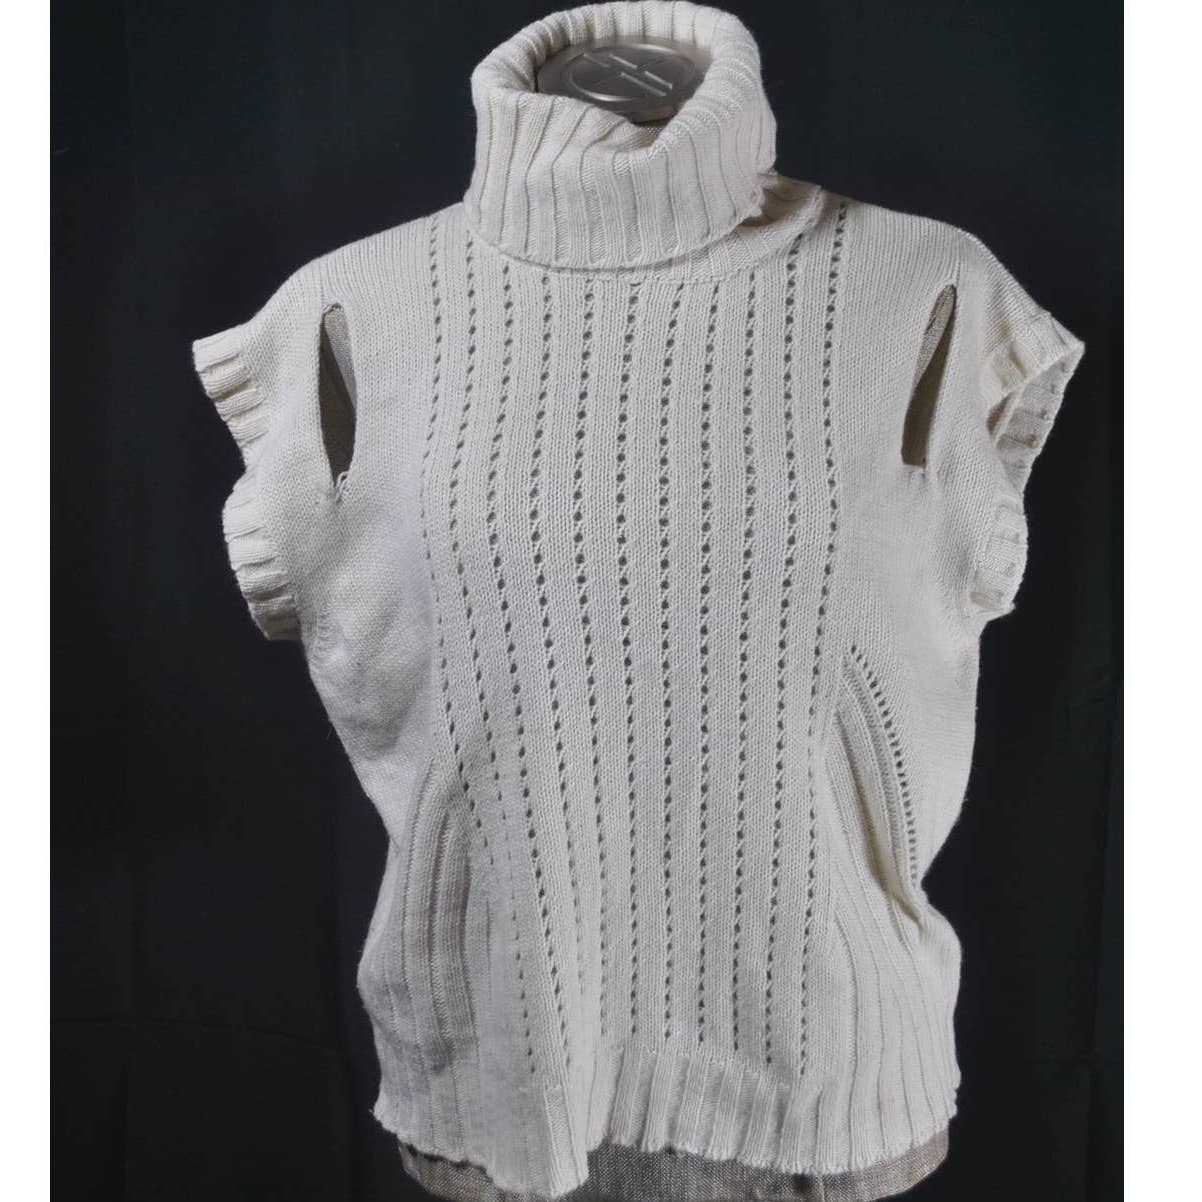 Reinaldo Laurenco Turtleneck Cream Cutout Sweater Vest- P